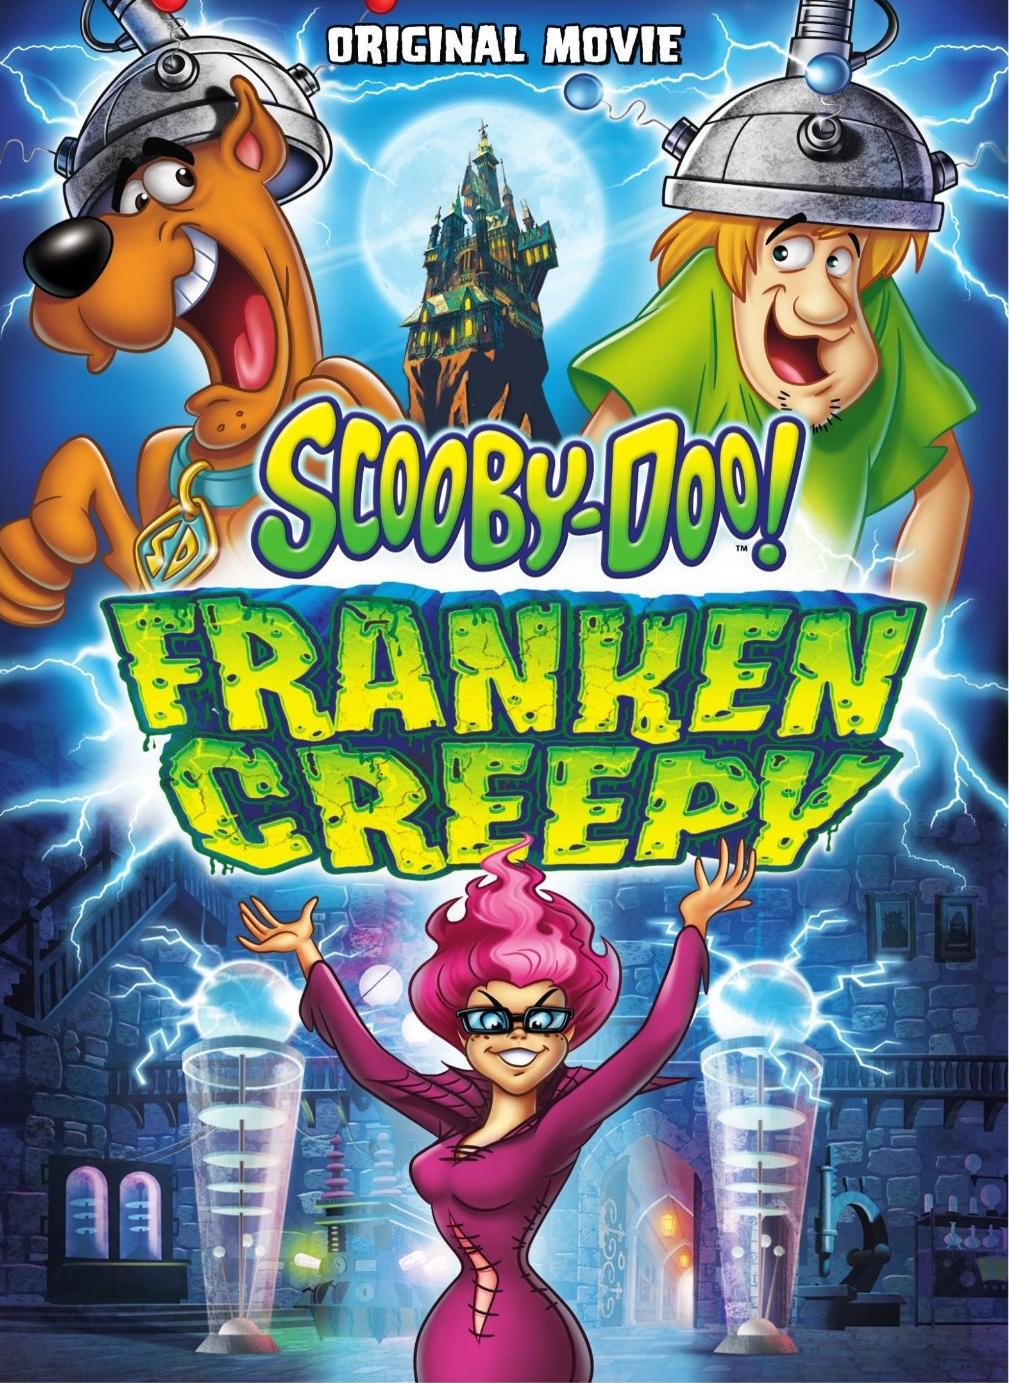 The Top 10 Scooby Movies – ScoobyFan.net